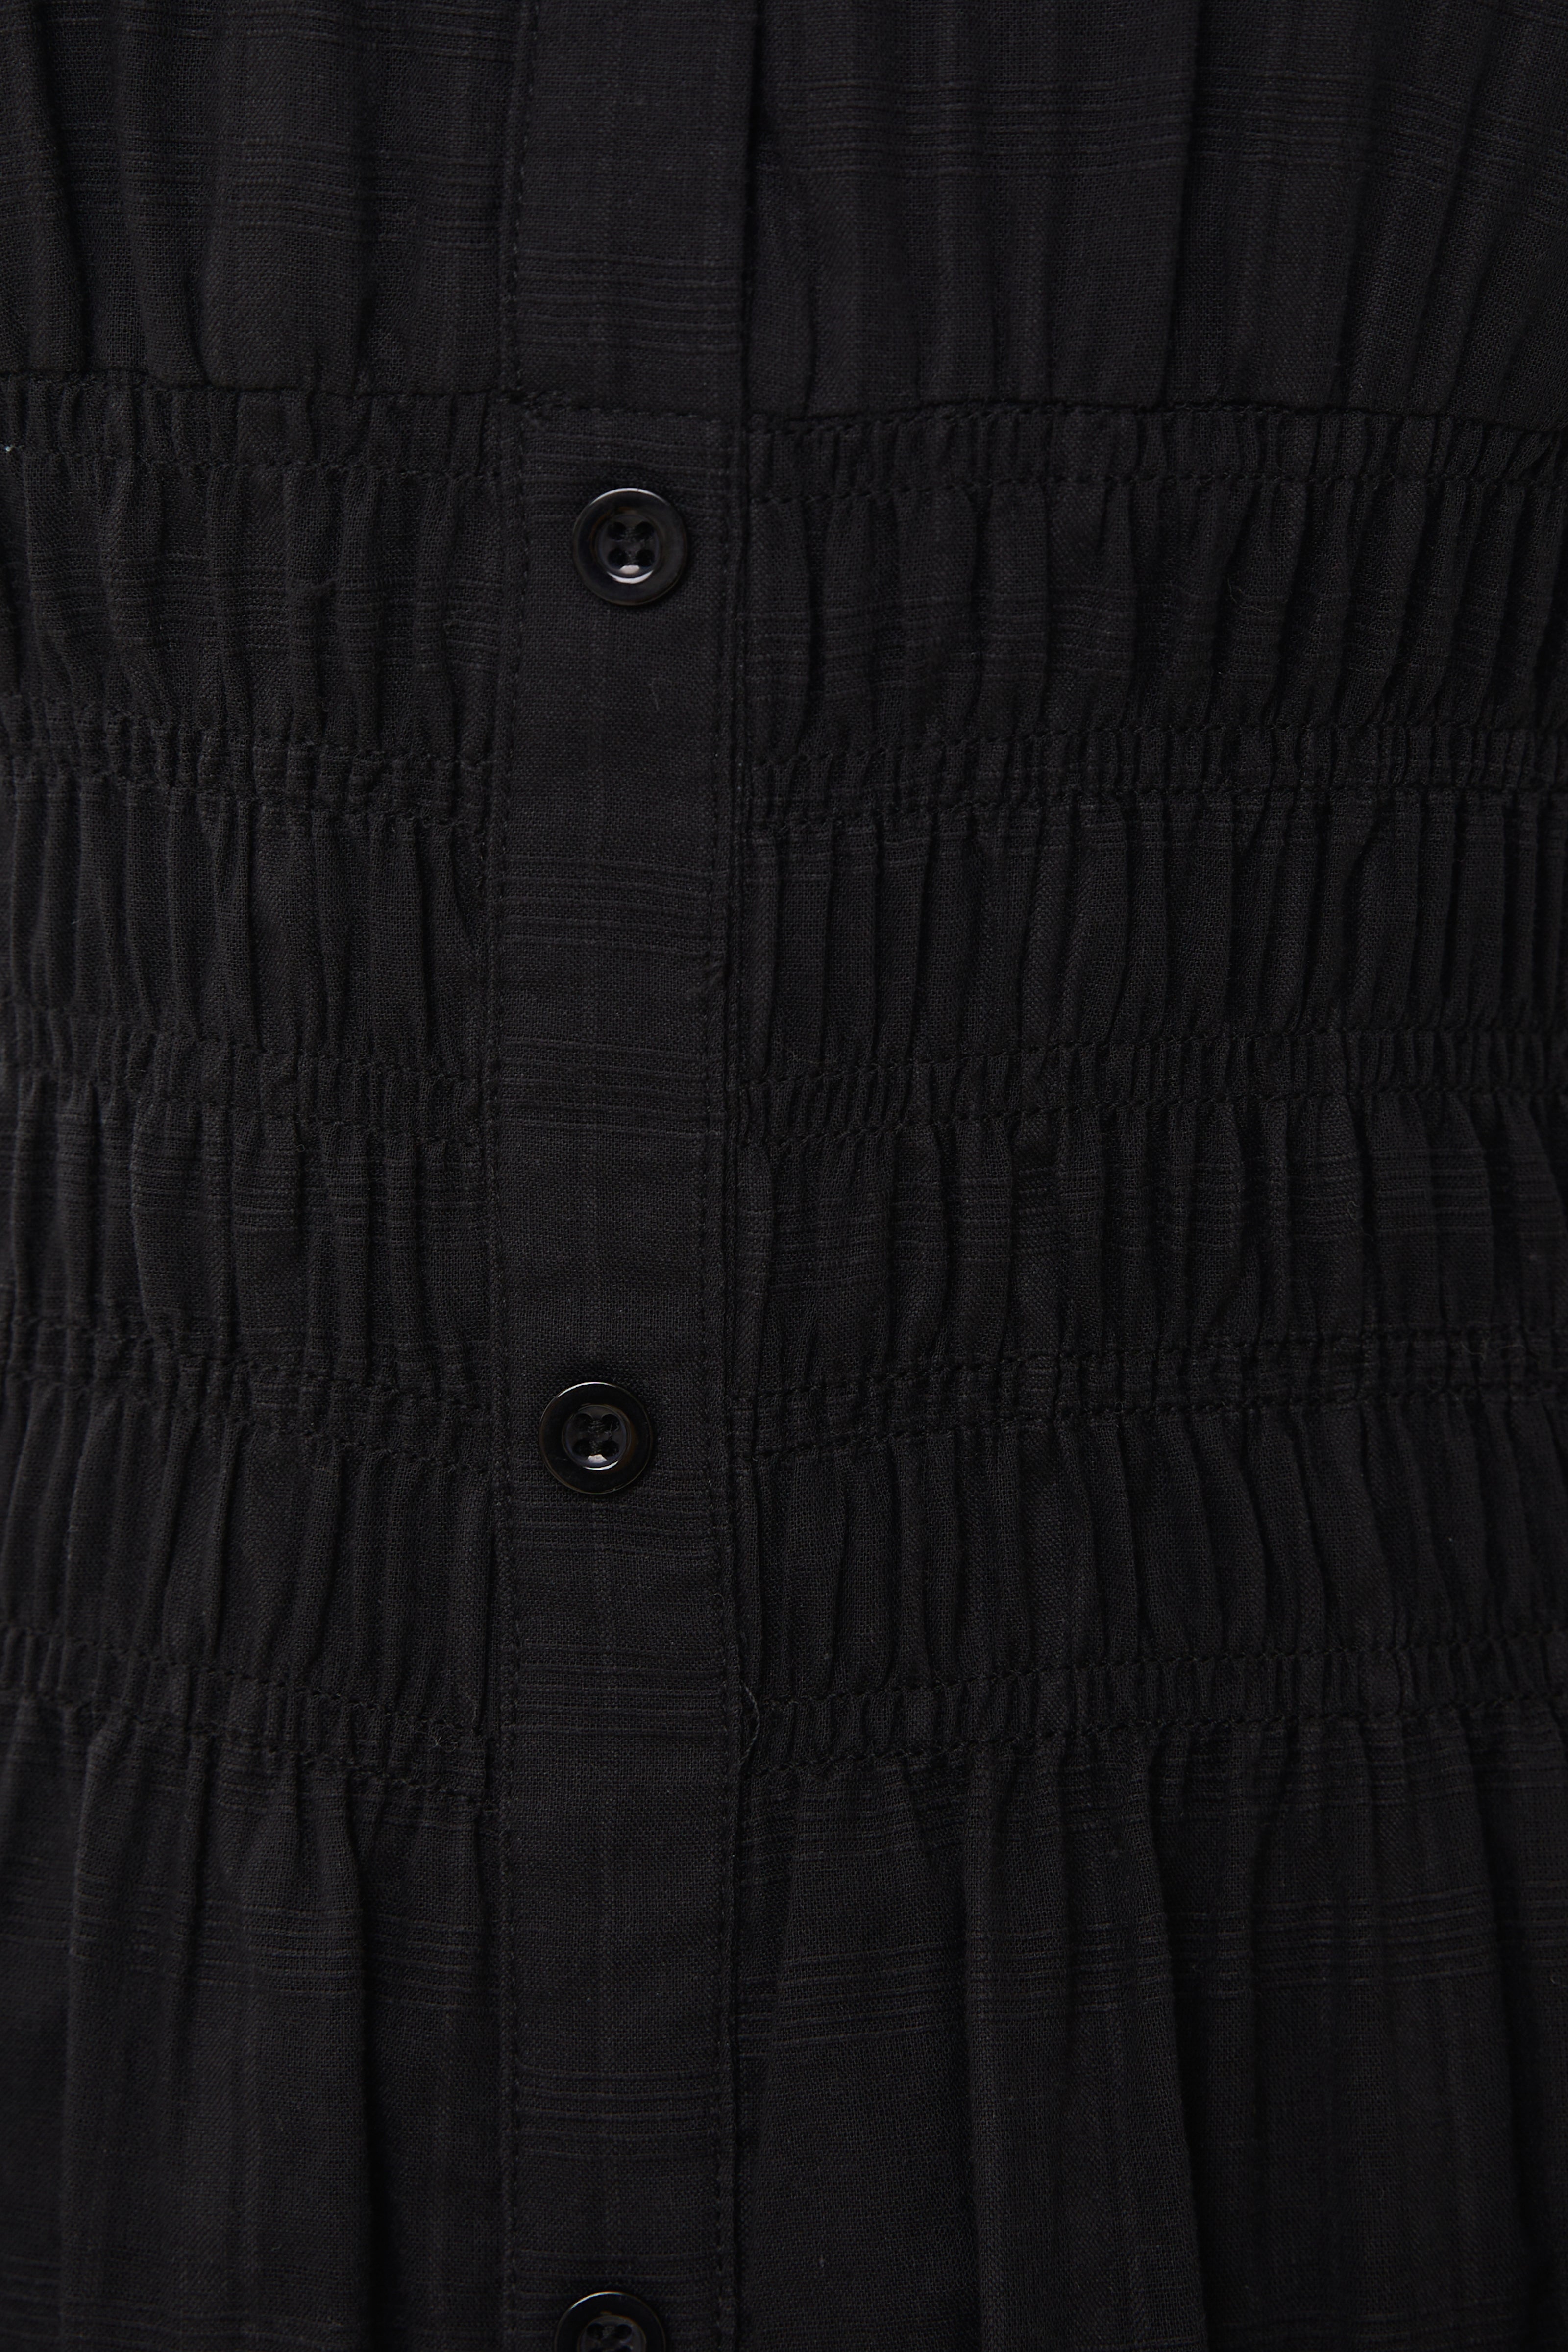 Buttoned-down Shirred Midi Dress in Black